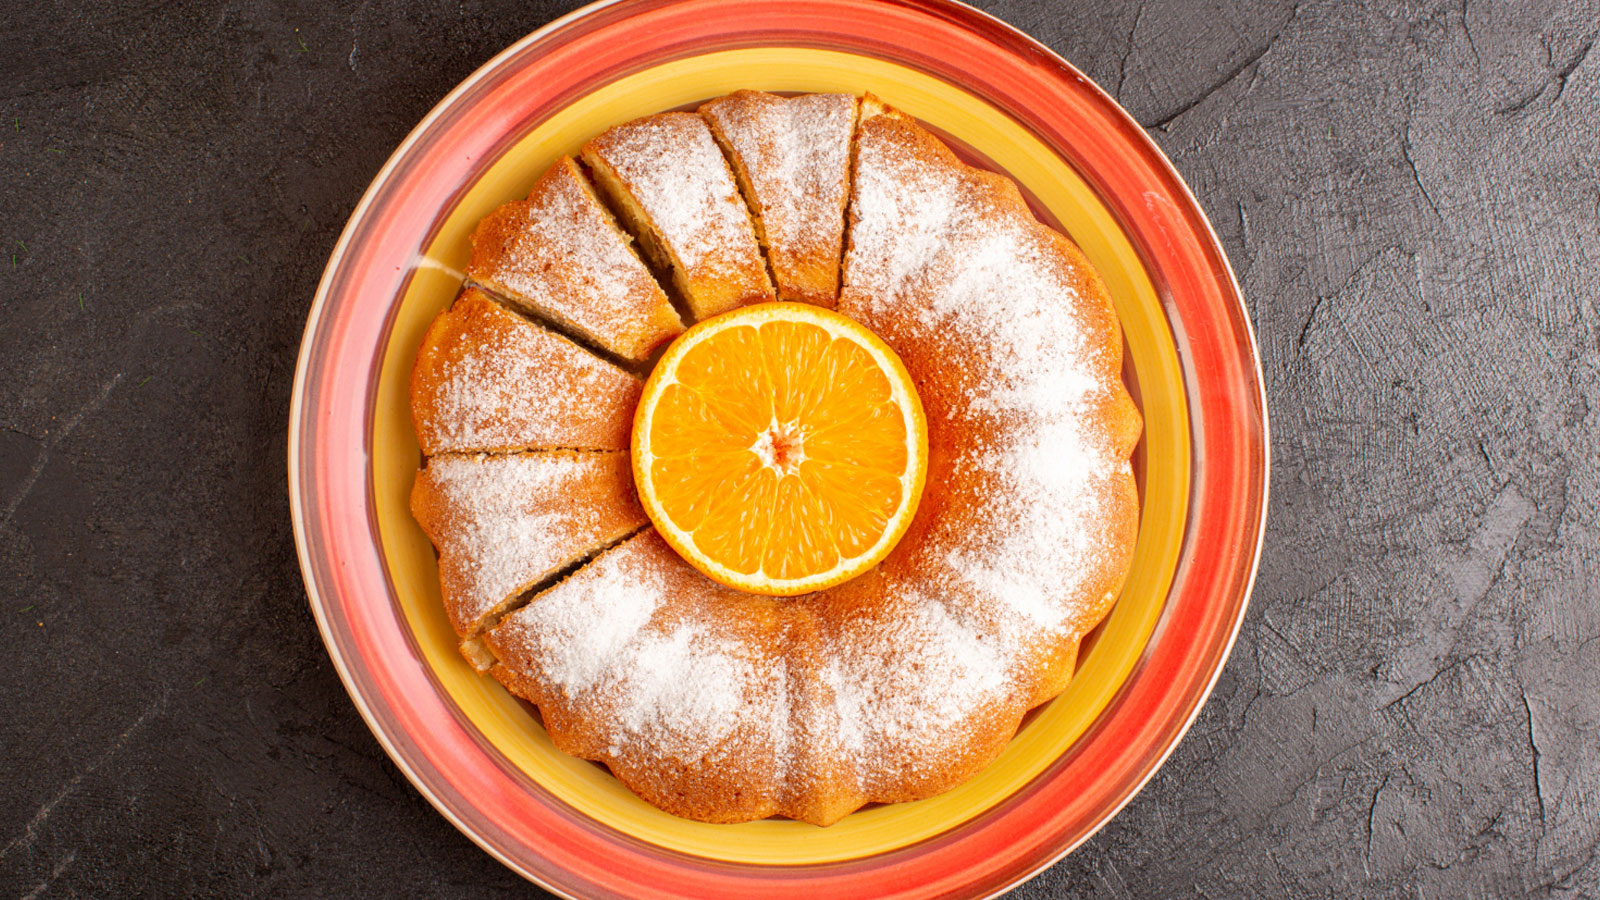 Portakallı kek, içerisine portakal suyu, portakal kabuğu rendesi katılıp yapılıyor.